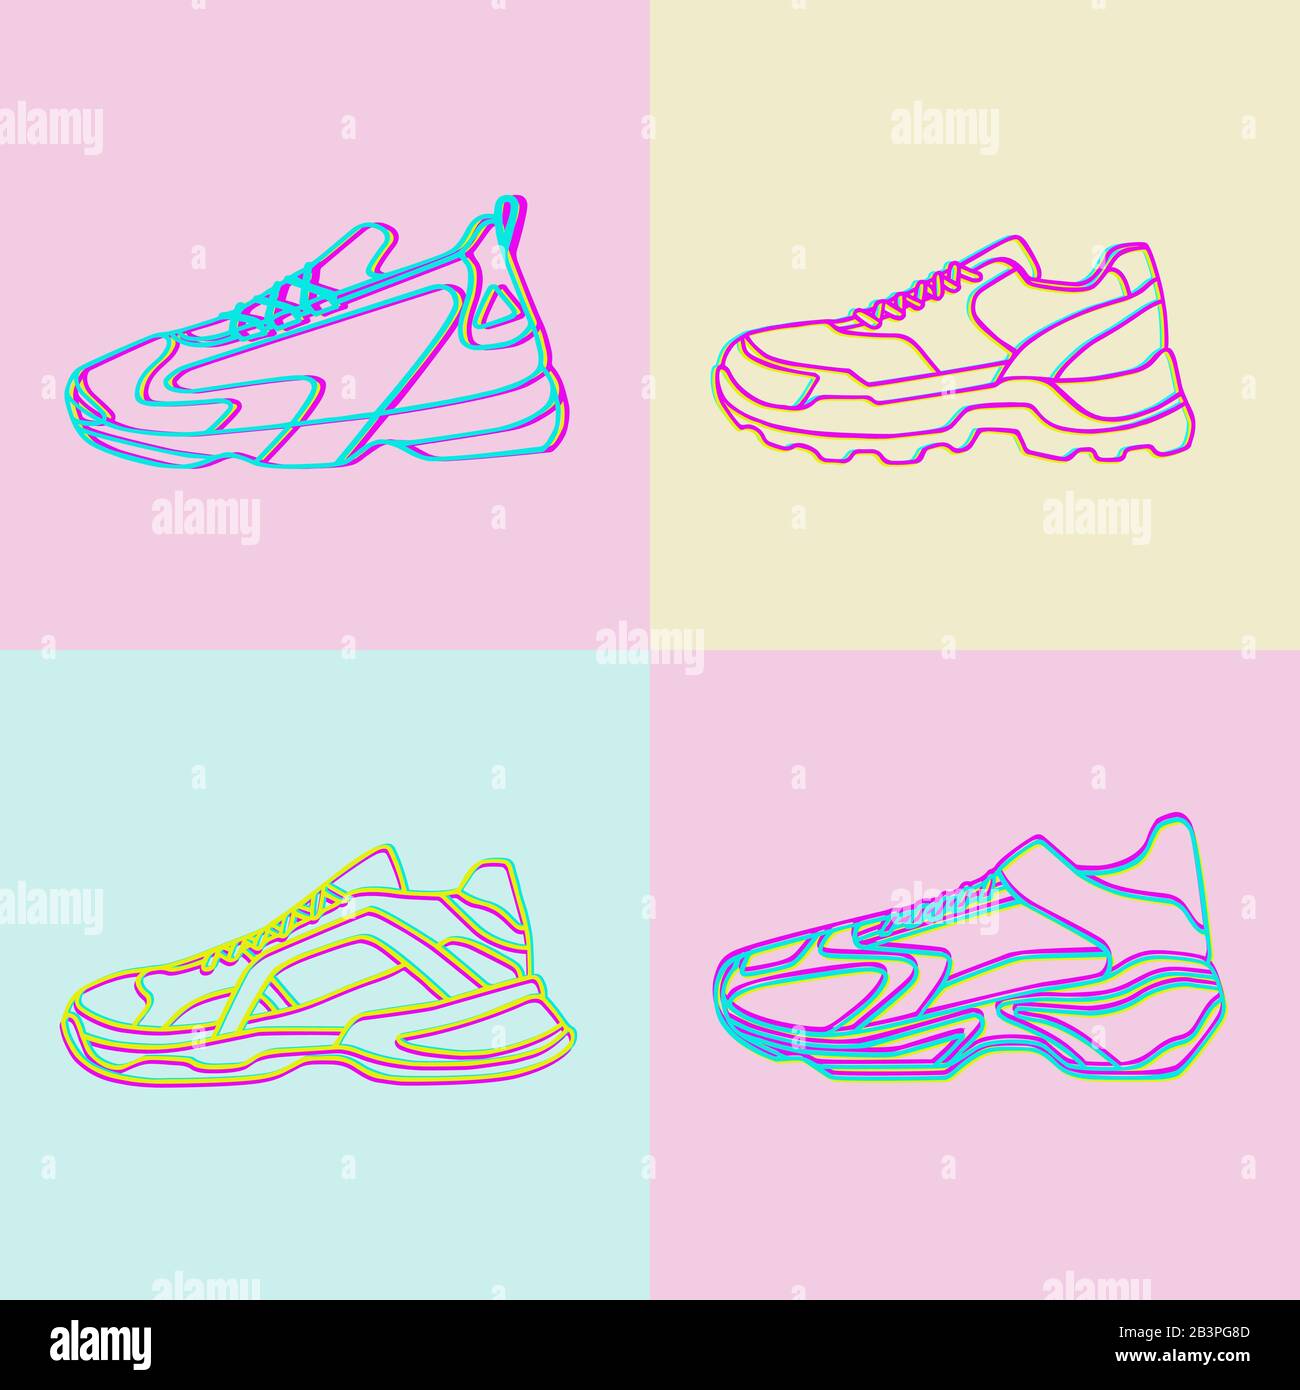 Vektorsymbol für Sneakers. Helle Neon Linearschuhe auf pinkblauem und gelbem Hintergrund.Einfache Abbildung von Fitness und Sport, Sportschuh. Schilderladen Stock Vektor